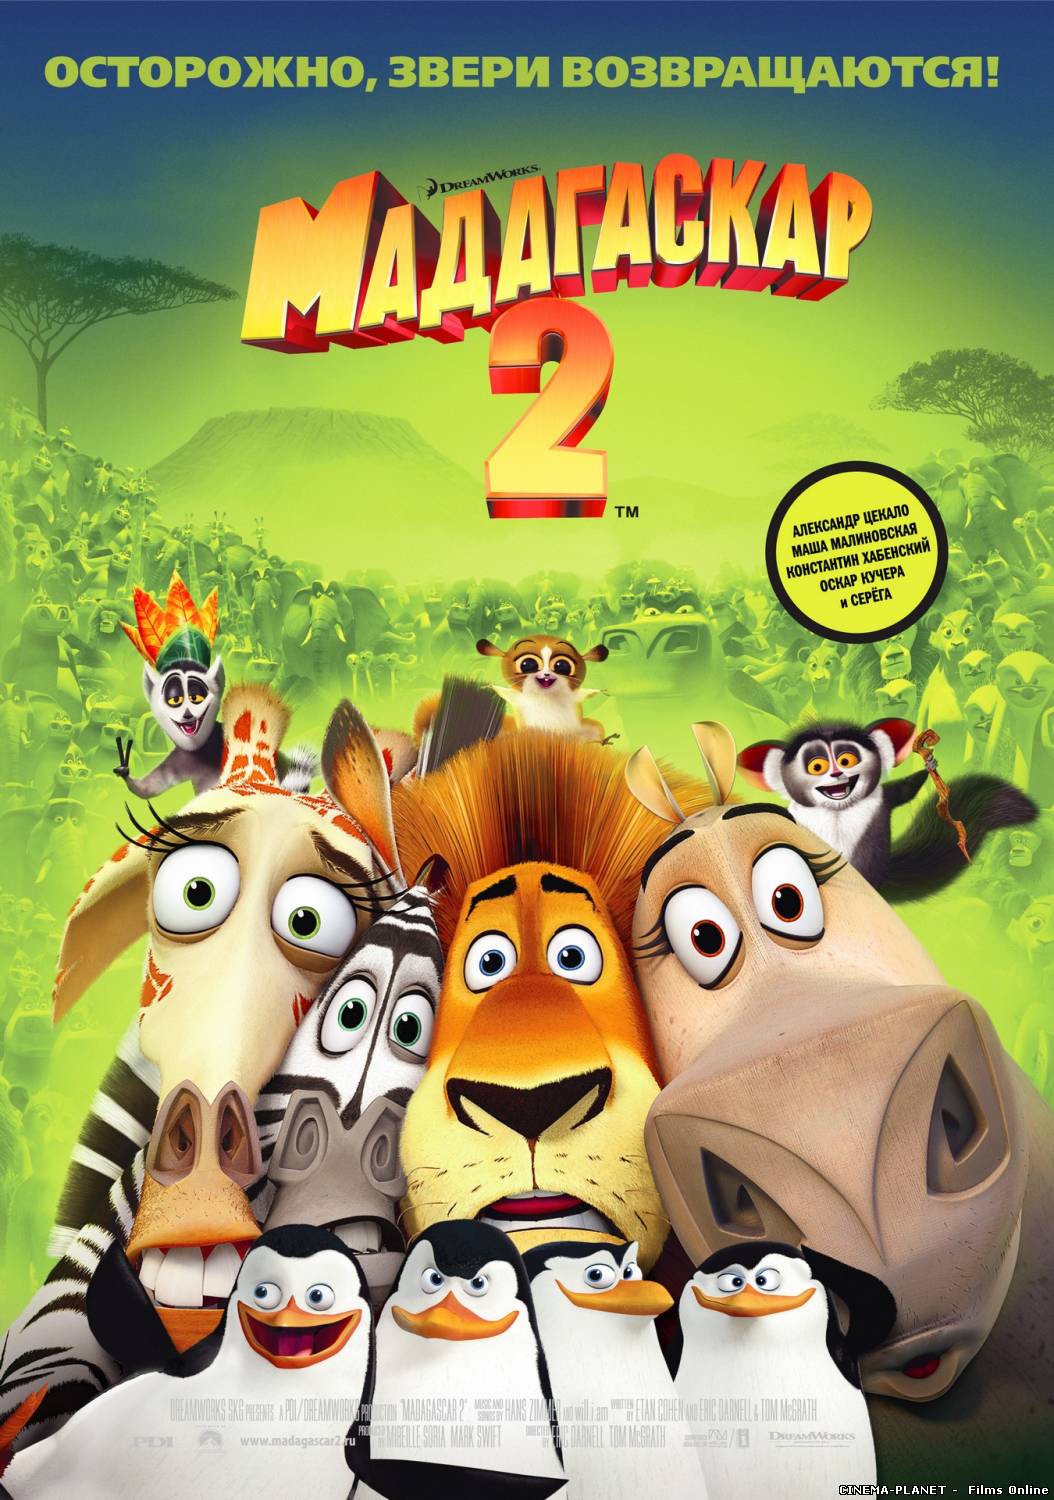 Мадагаскар 2 (2008) Українською онлайн без реєстрації